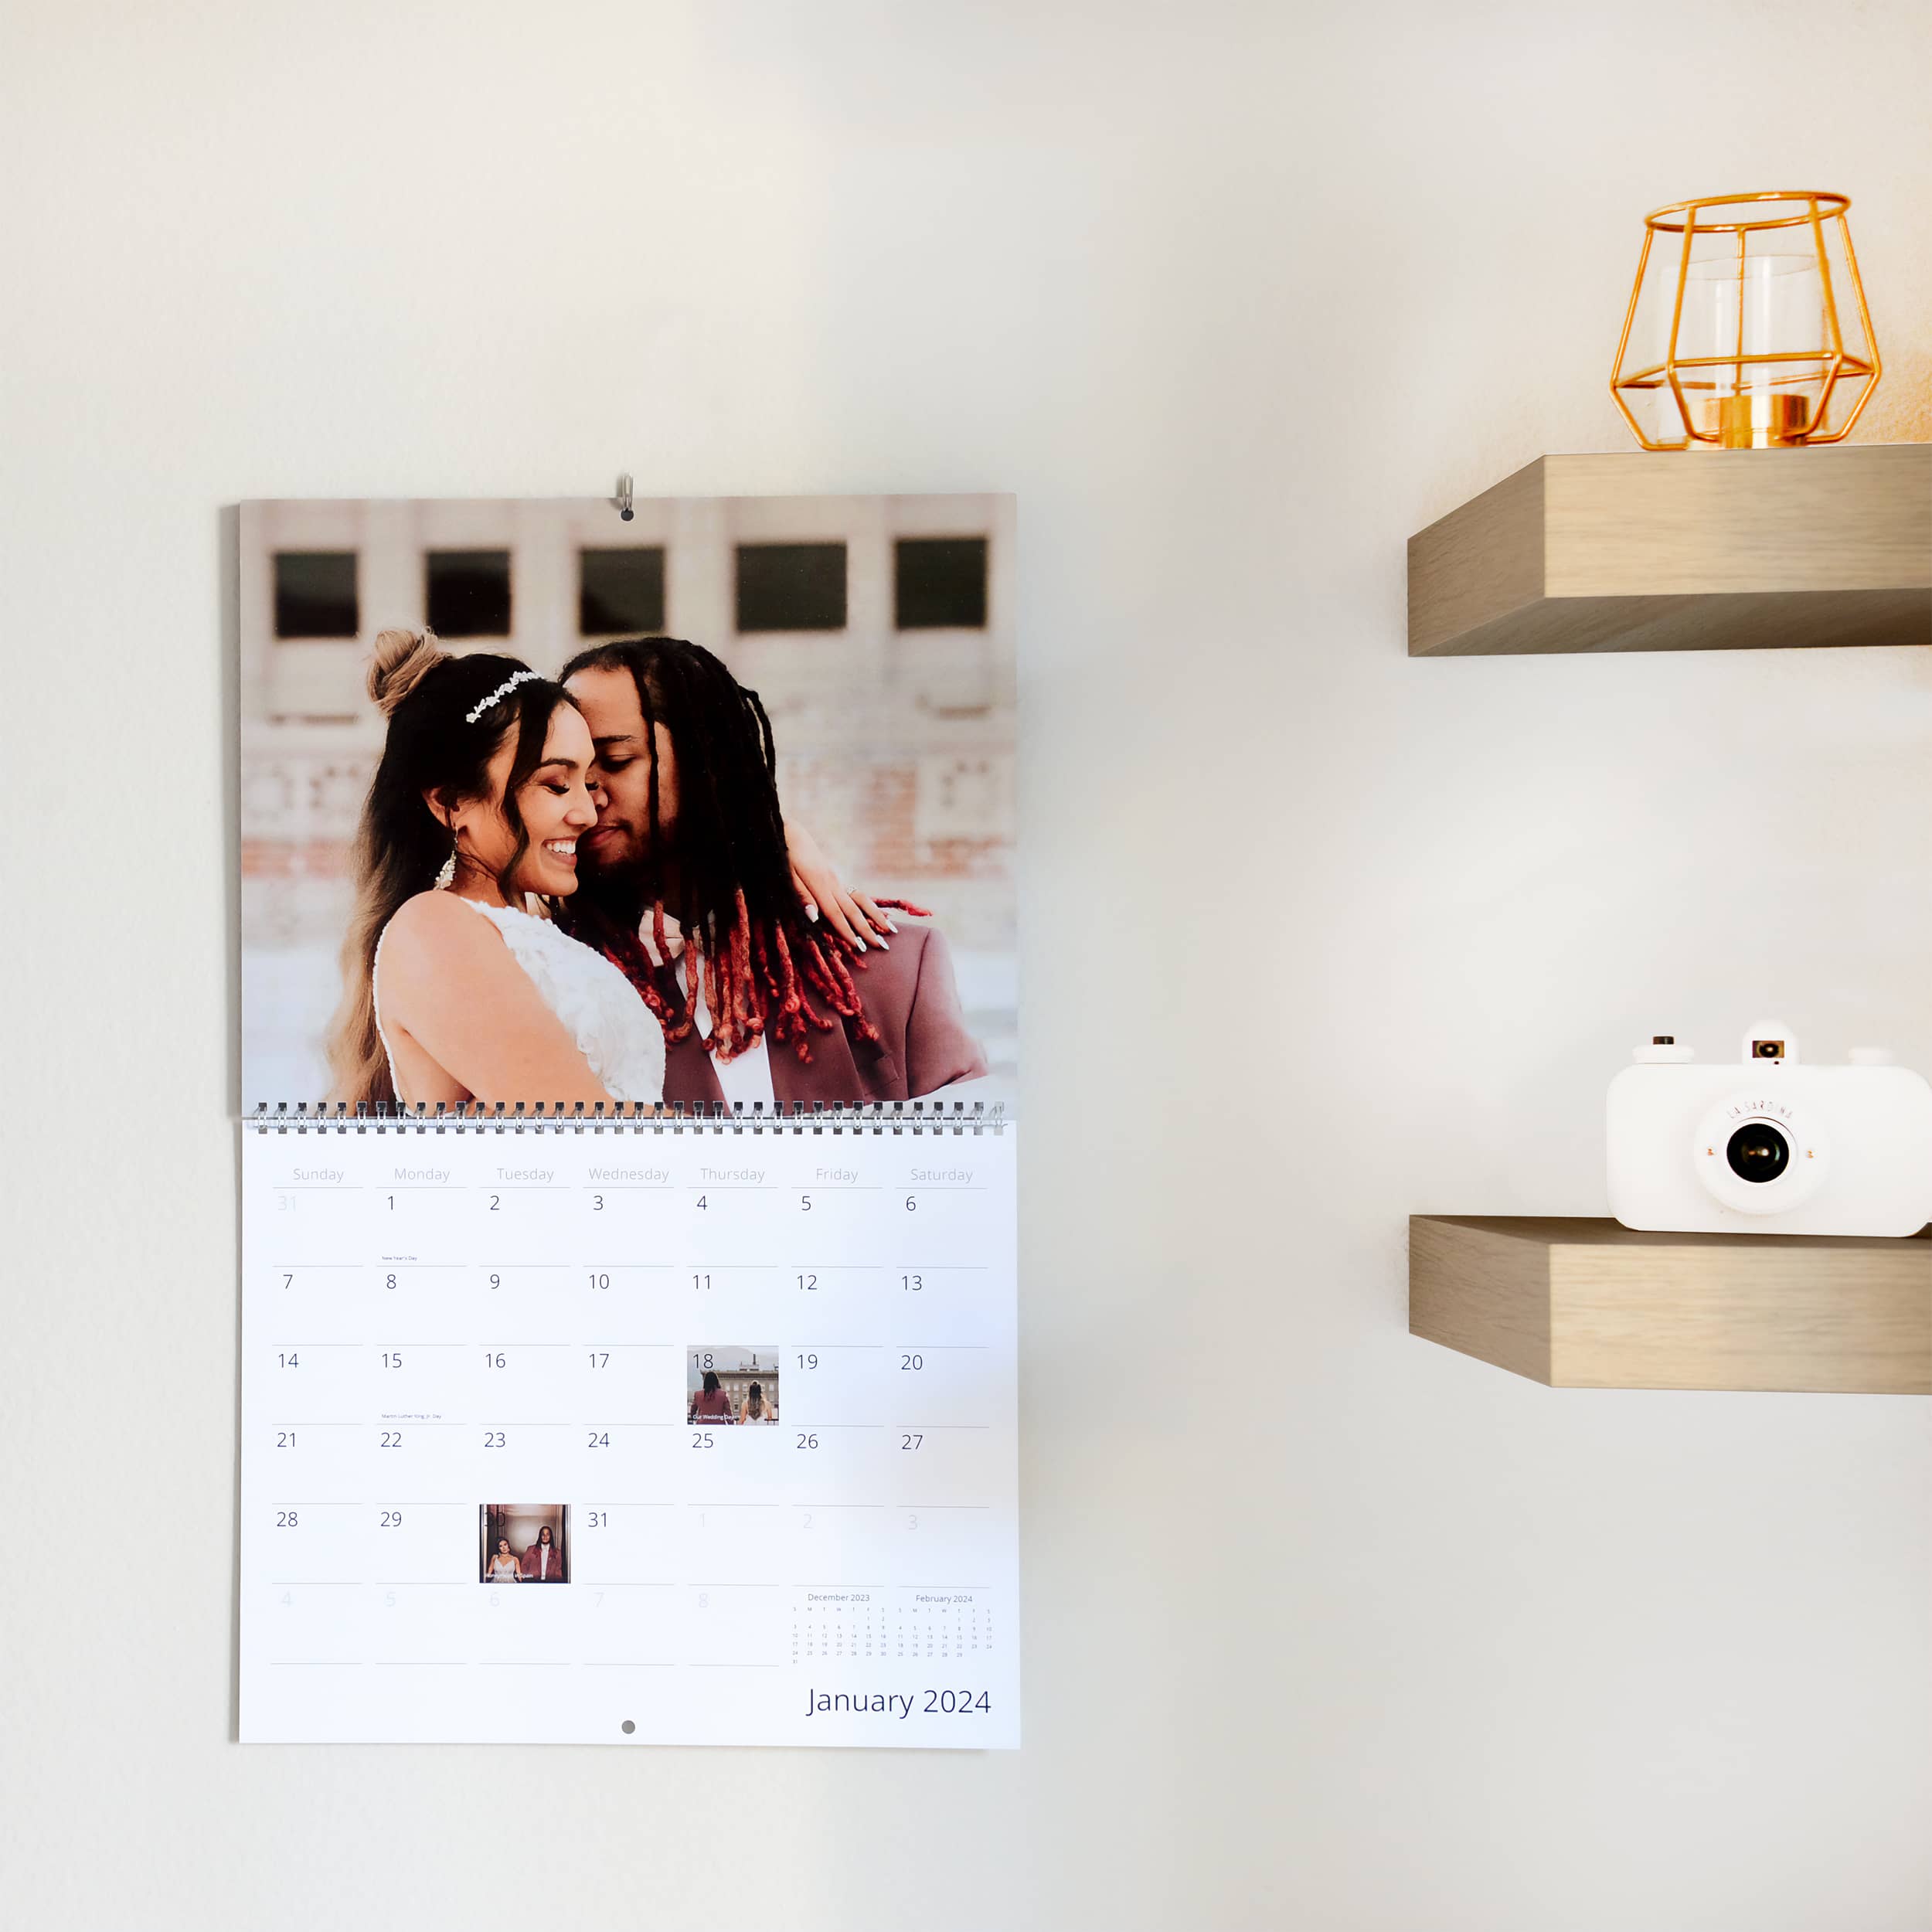 How to make a custom calendar for a gift